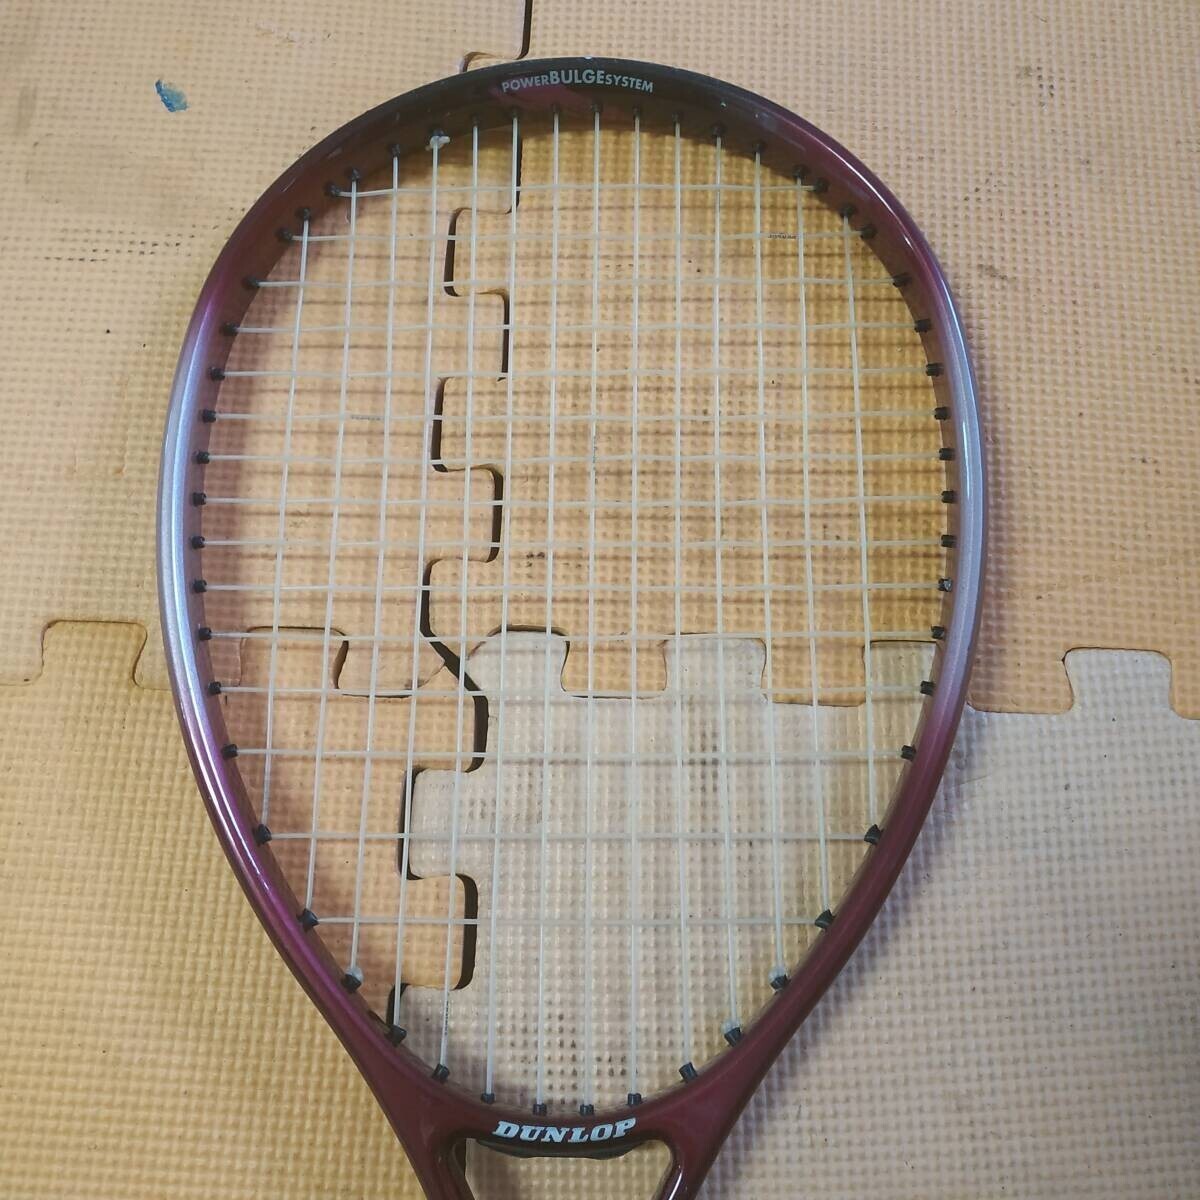 ◇ DUNLOP MAXPOWER150 テニスラケット 硬式テニス ダンロップ マックスパワー 現状品 ⑱ ◇ C91299_画像2